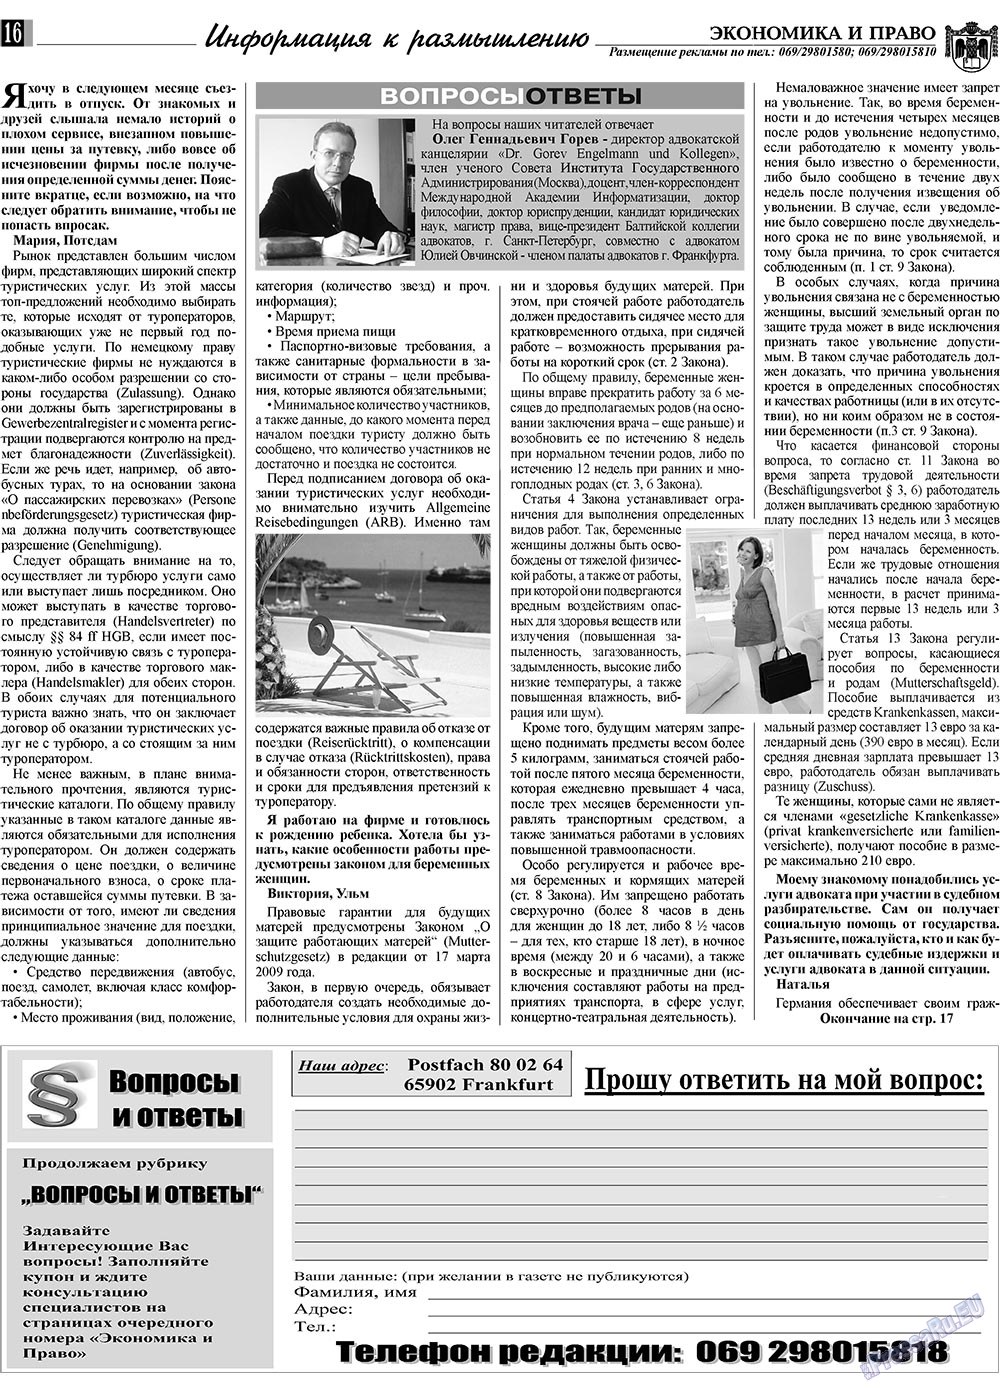 Экономика и право, газета. 2009 №11 стр.16